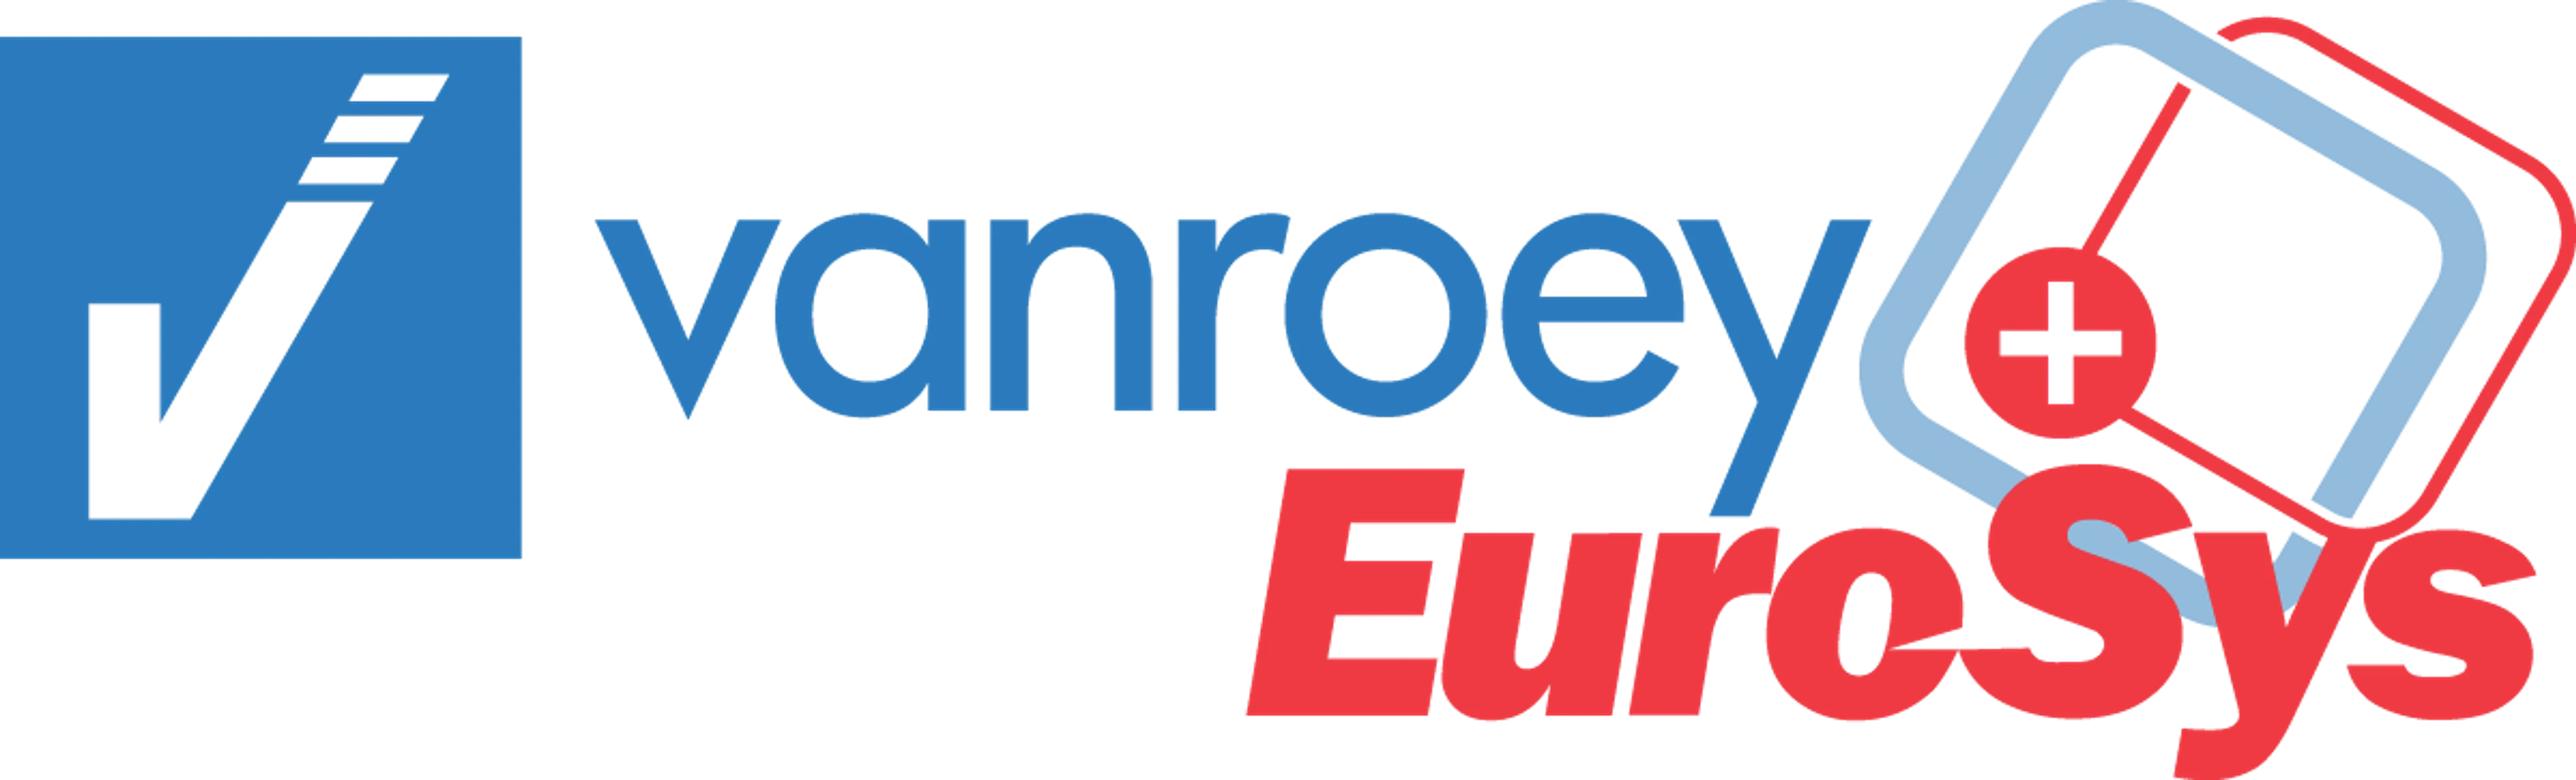 EUROSYS logo